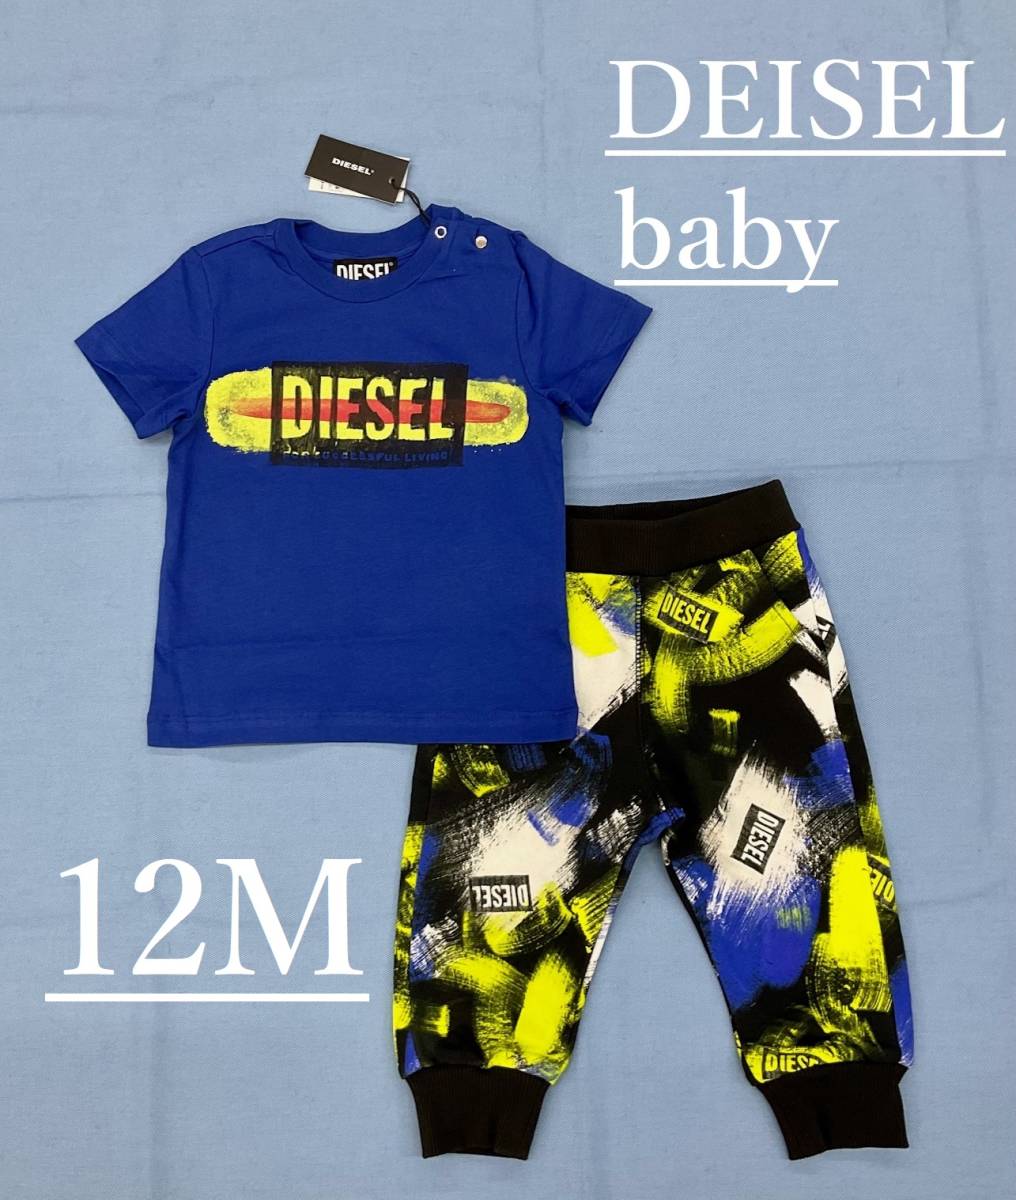  дизель baby выставить 0322 12M(12 месяцев ранг ) новый товар с биркой в подарок .K00191 & K00170 DIESEL футболка & брюки 